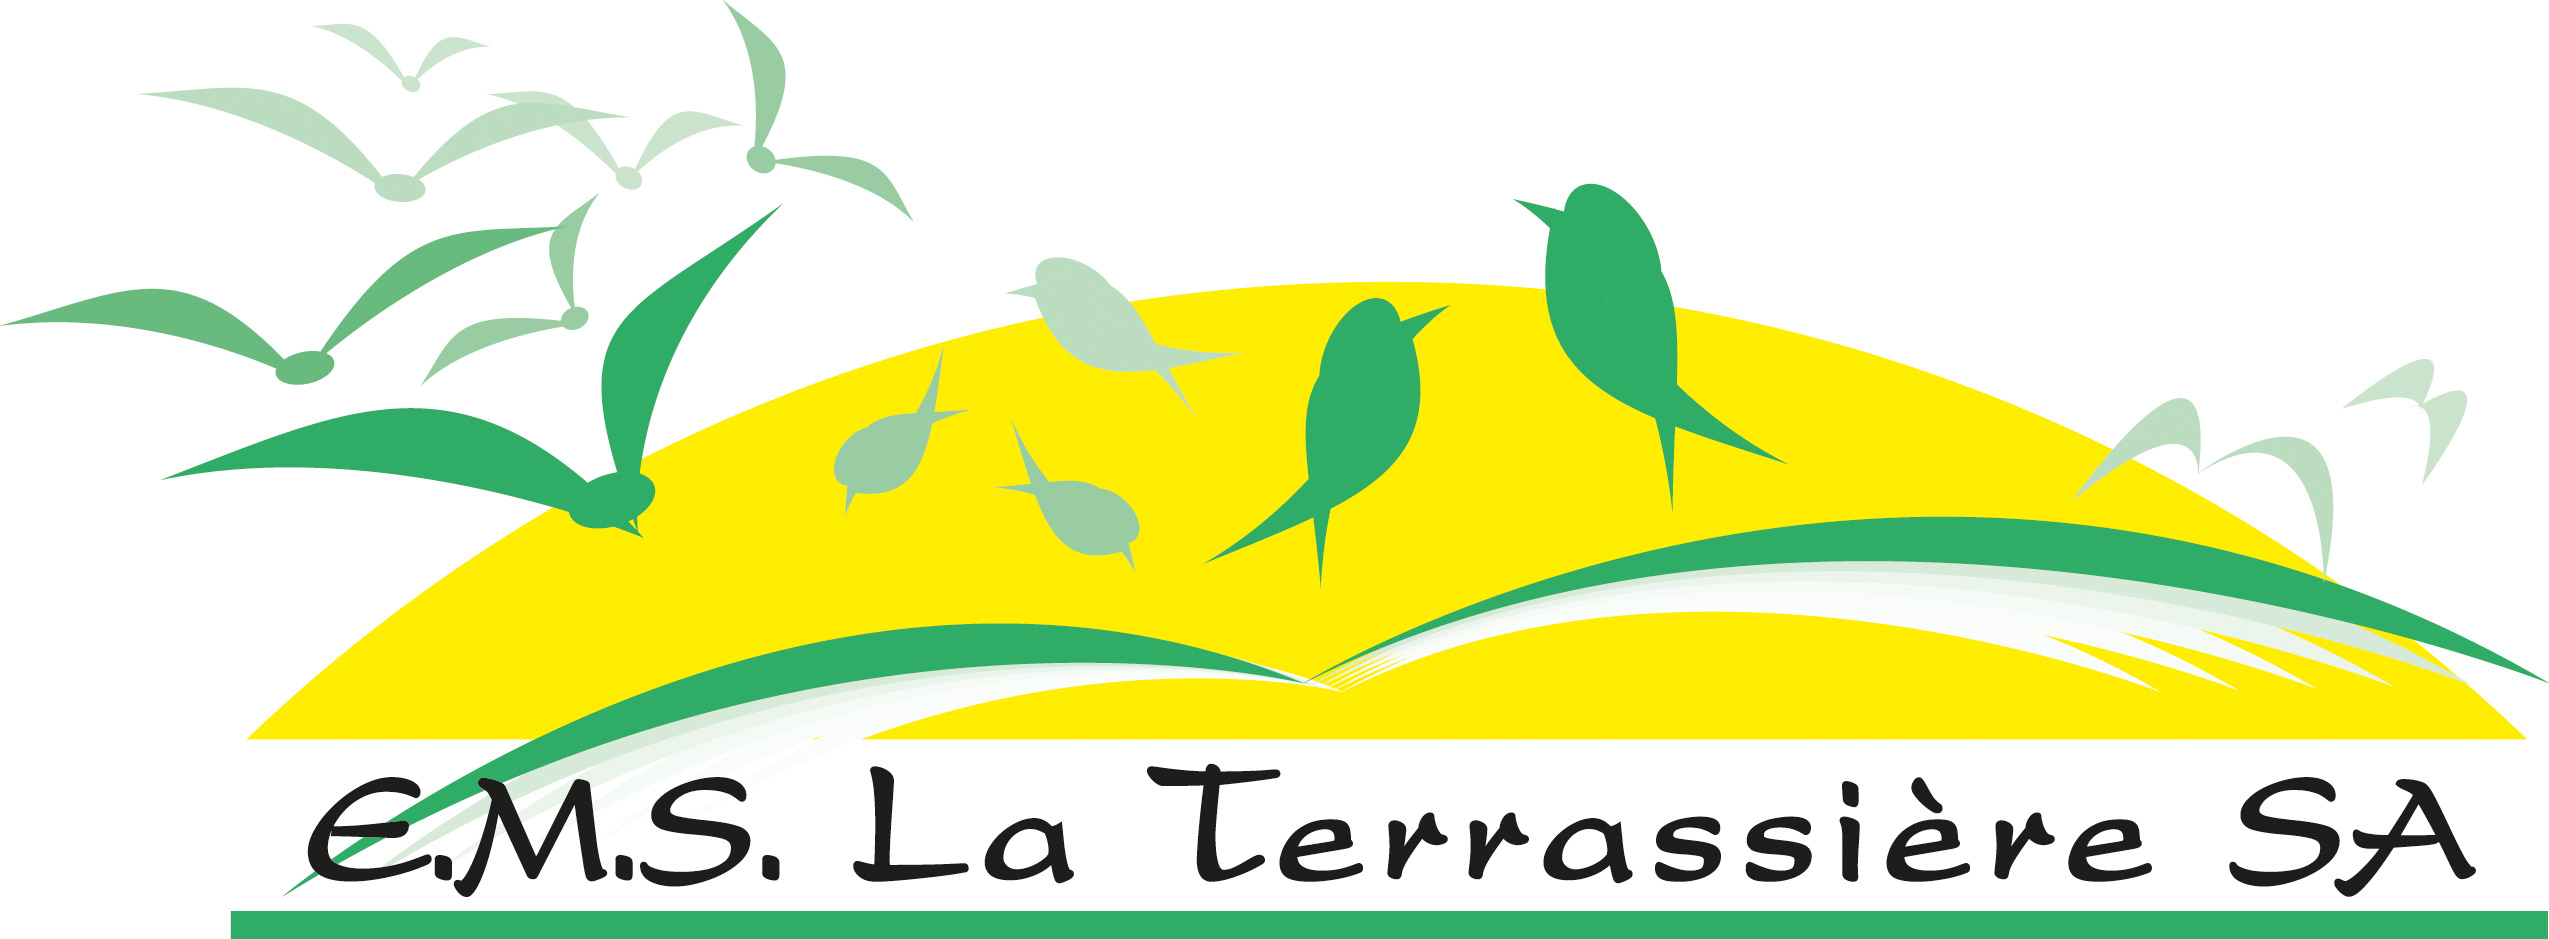 E.M.S La Terrassière SA - logo